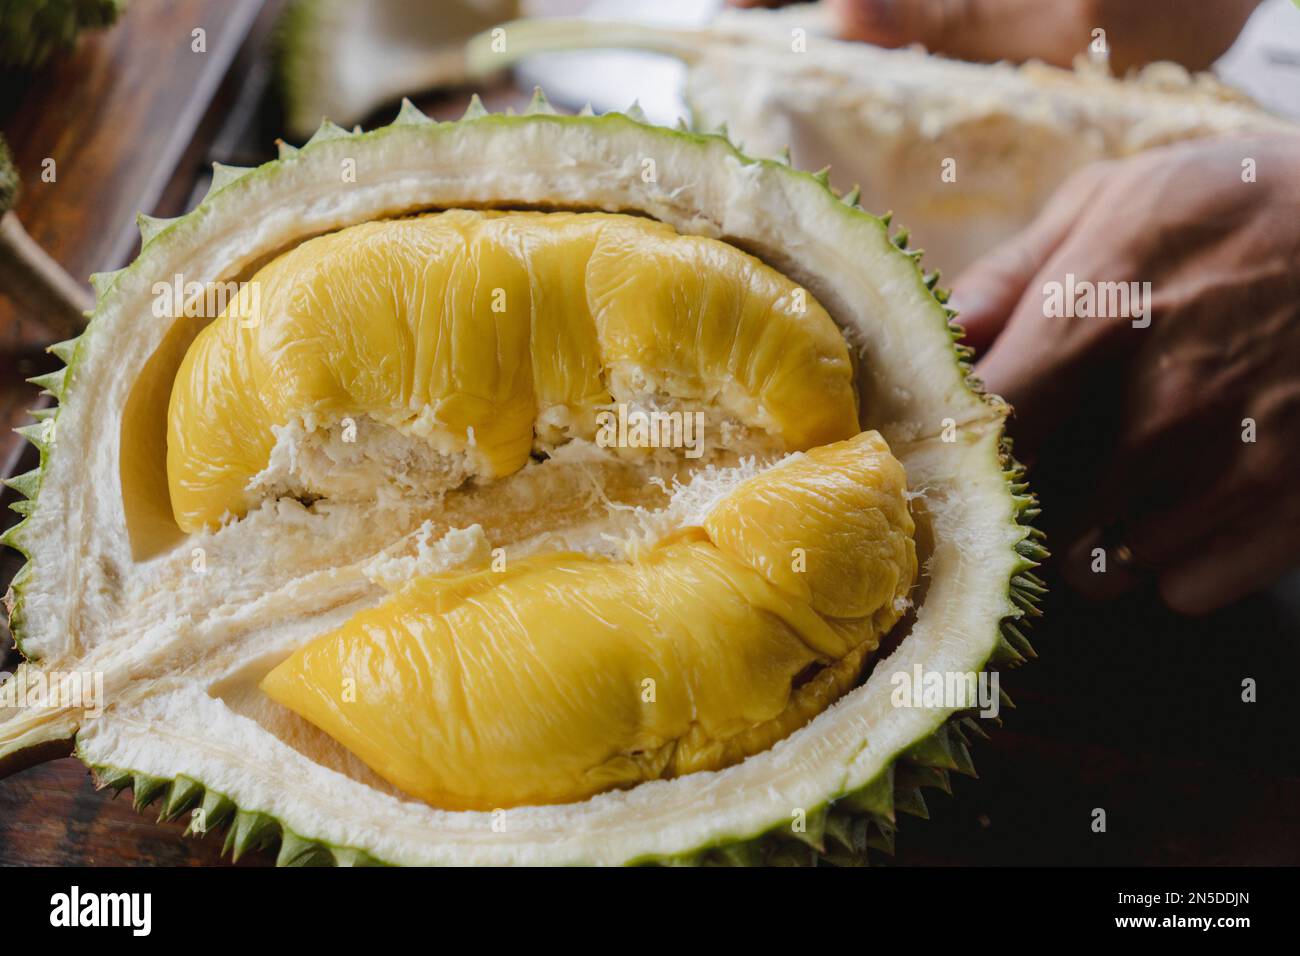 Fruits exotiques et tropicaux duriens à moitié ouverts sur une table. Roi des fruits de Malaisie, Bornéo, Asie du Sud-est. Variété Musang King. Banque D'Images